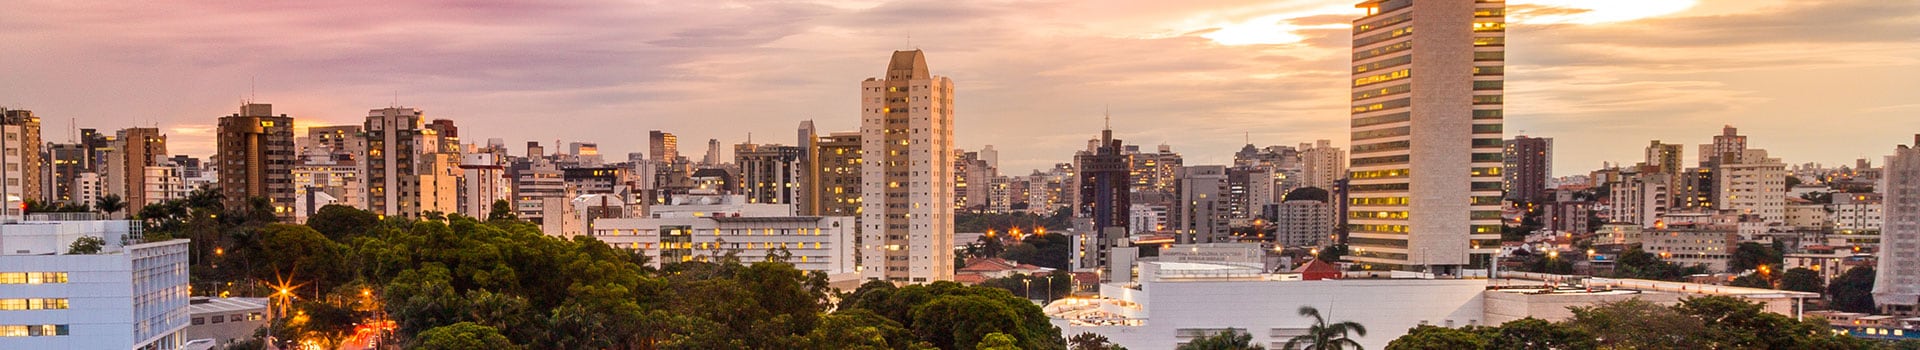 Cuiabá - Belo horizonte